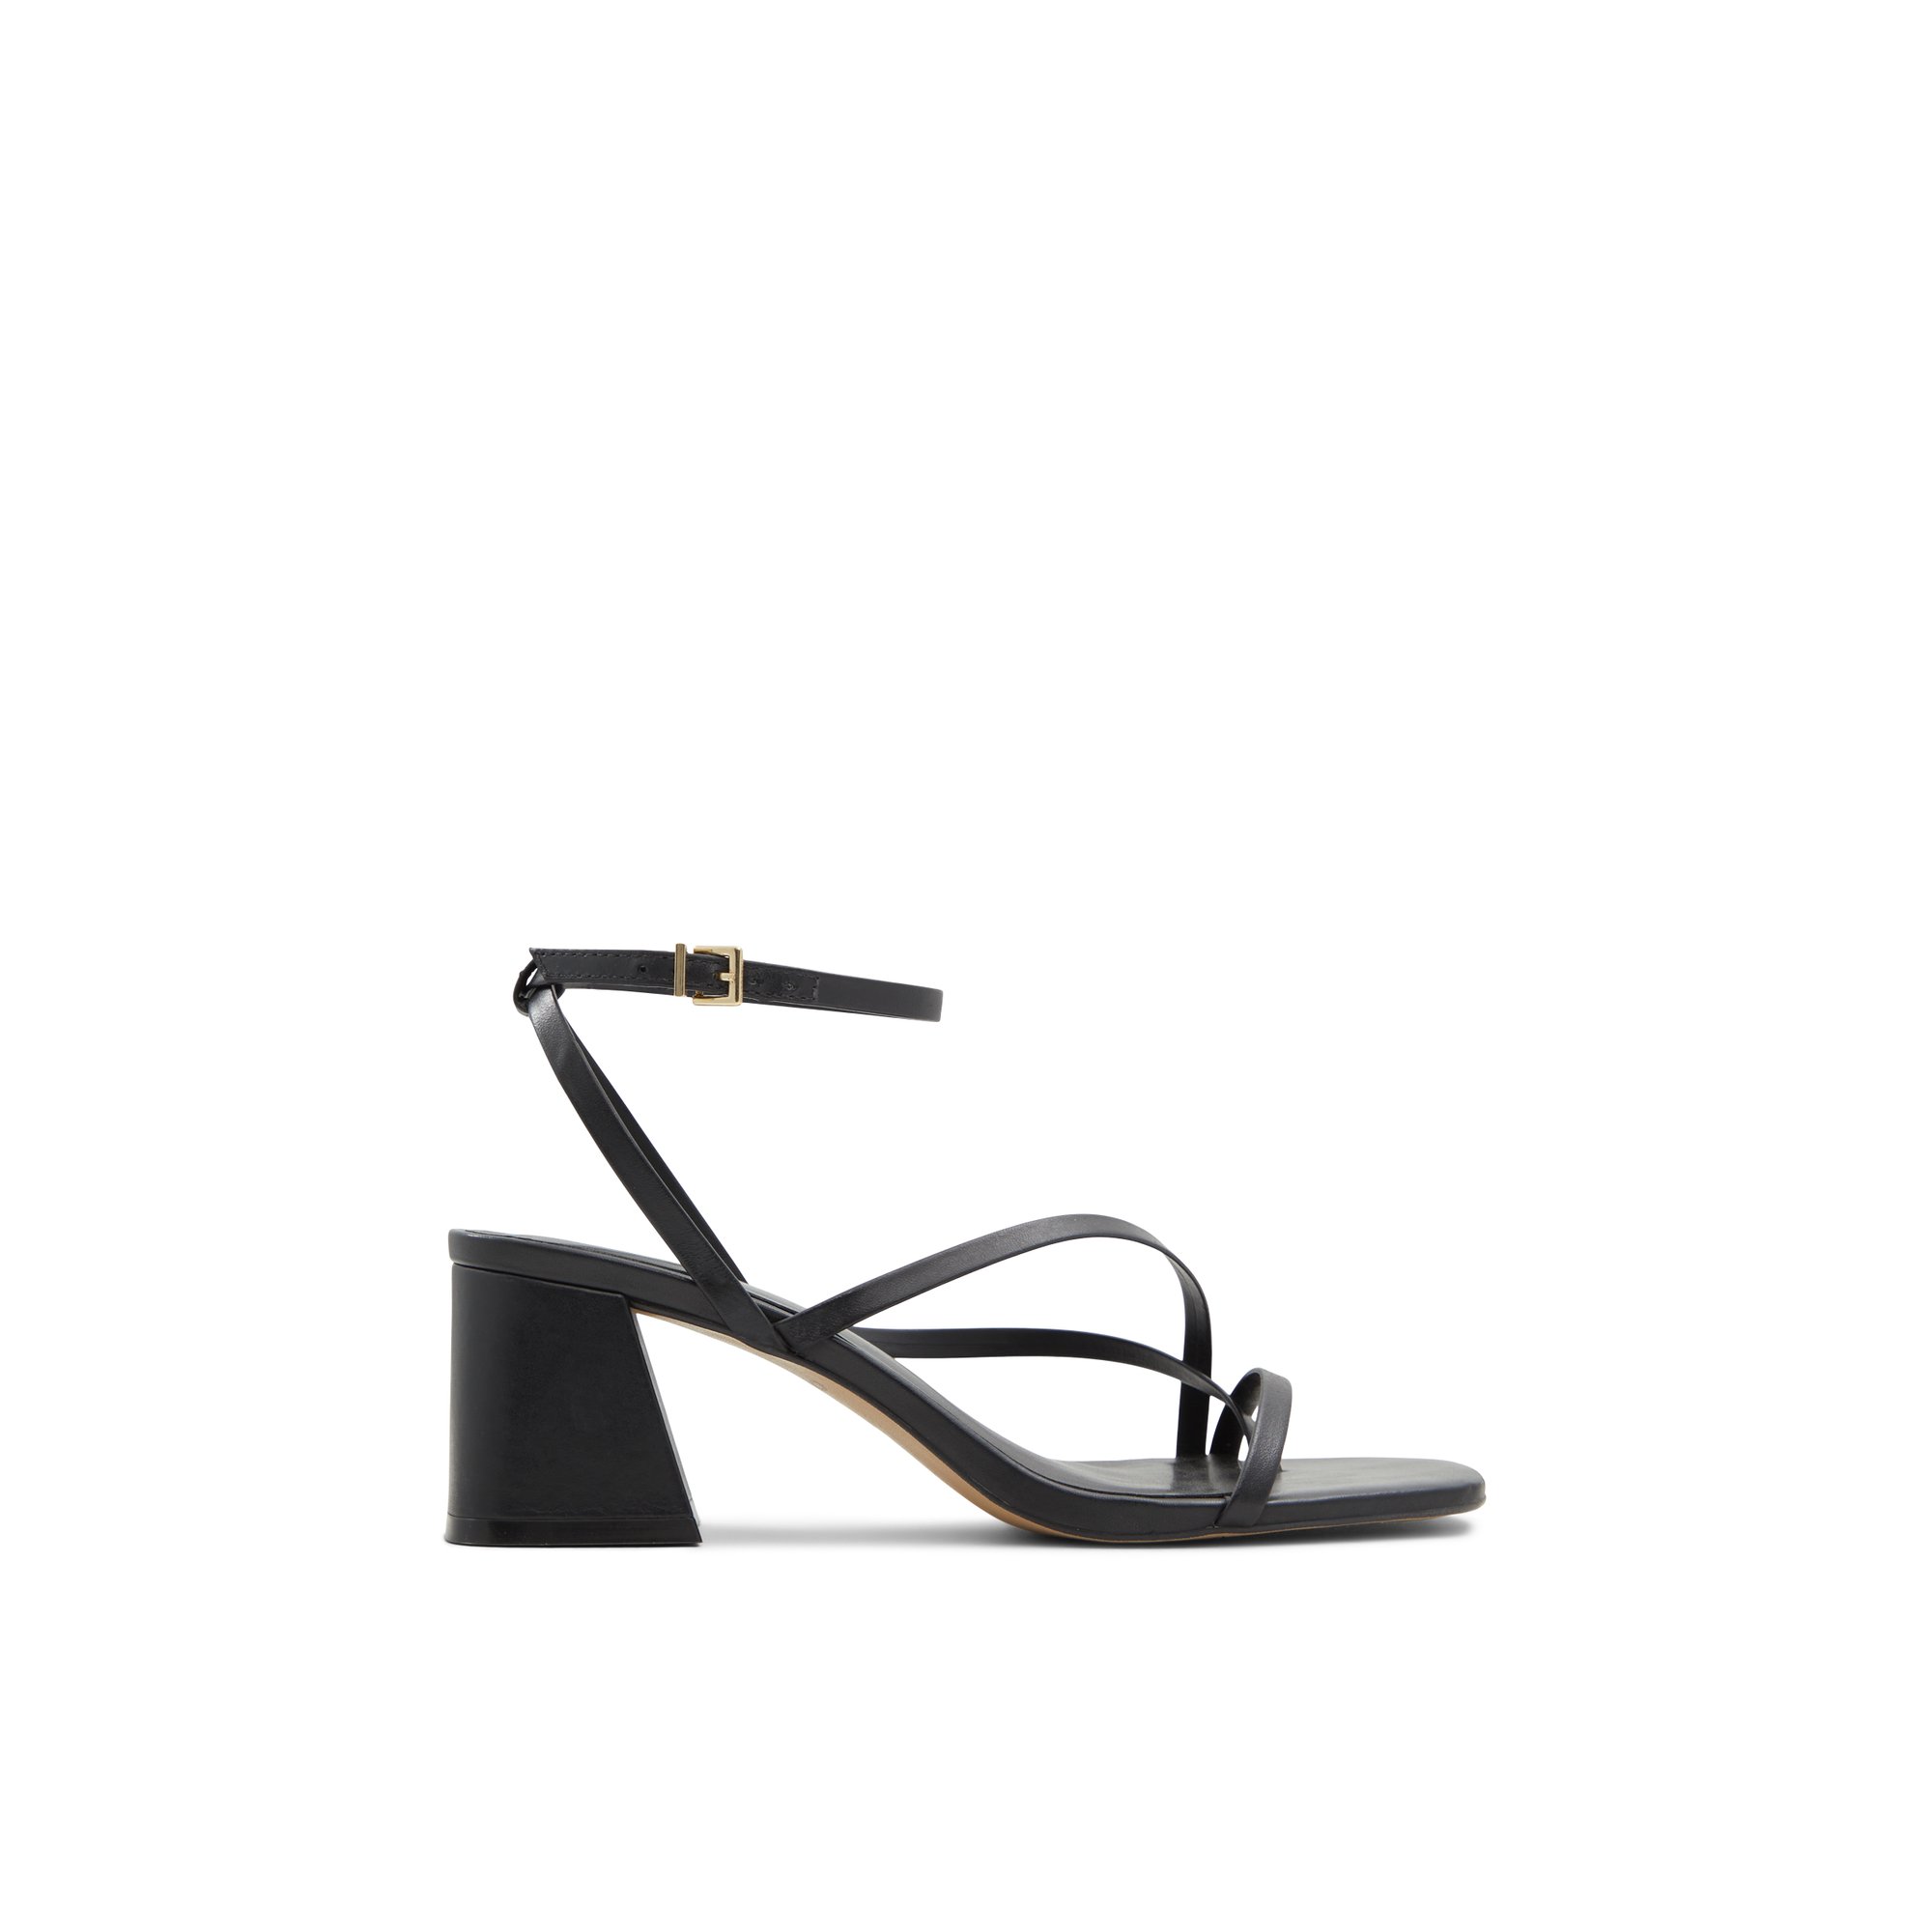 ALDO Adrauder - Women's Sandals Strappy - Black